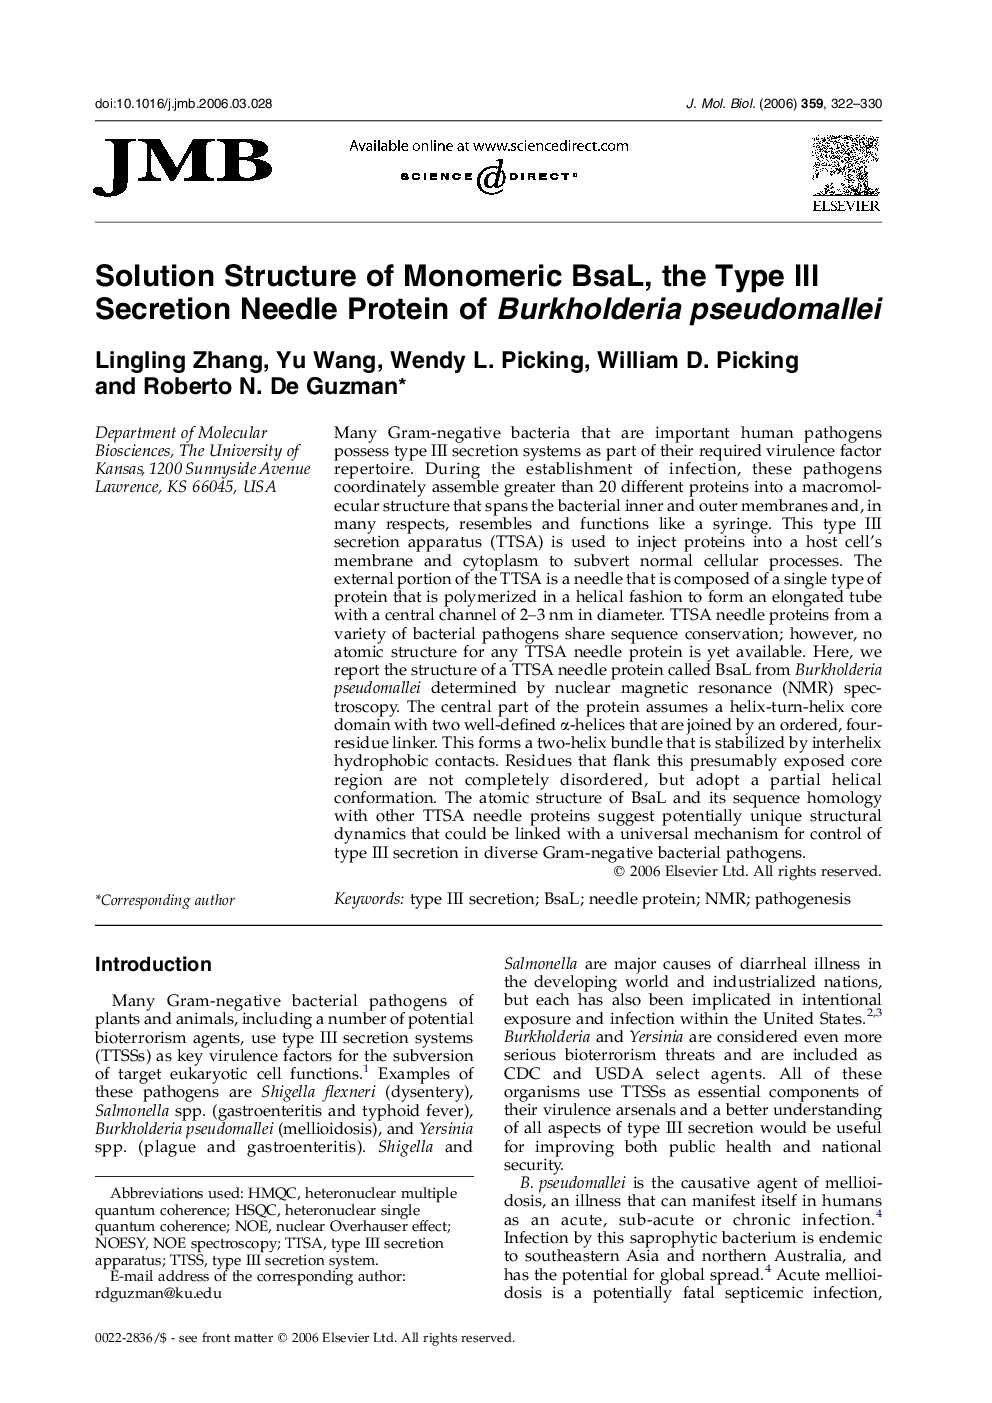 Solution Structure of Monomeric BsaL, the Type III Secretion Needle Protein of Burkholderia pseudomallei